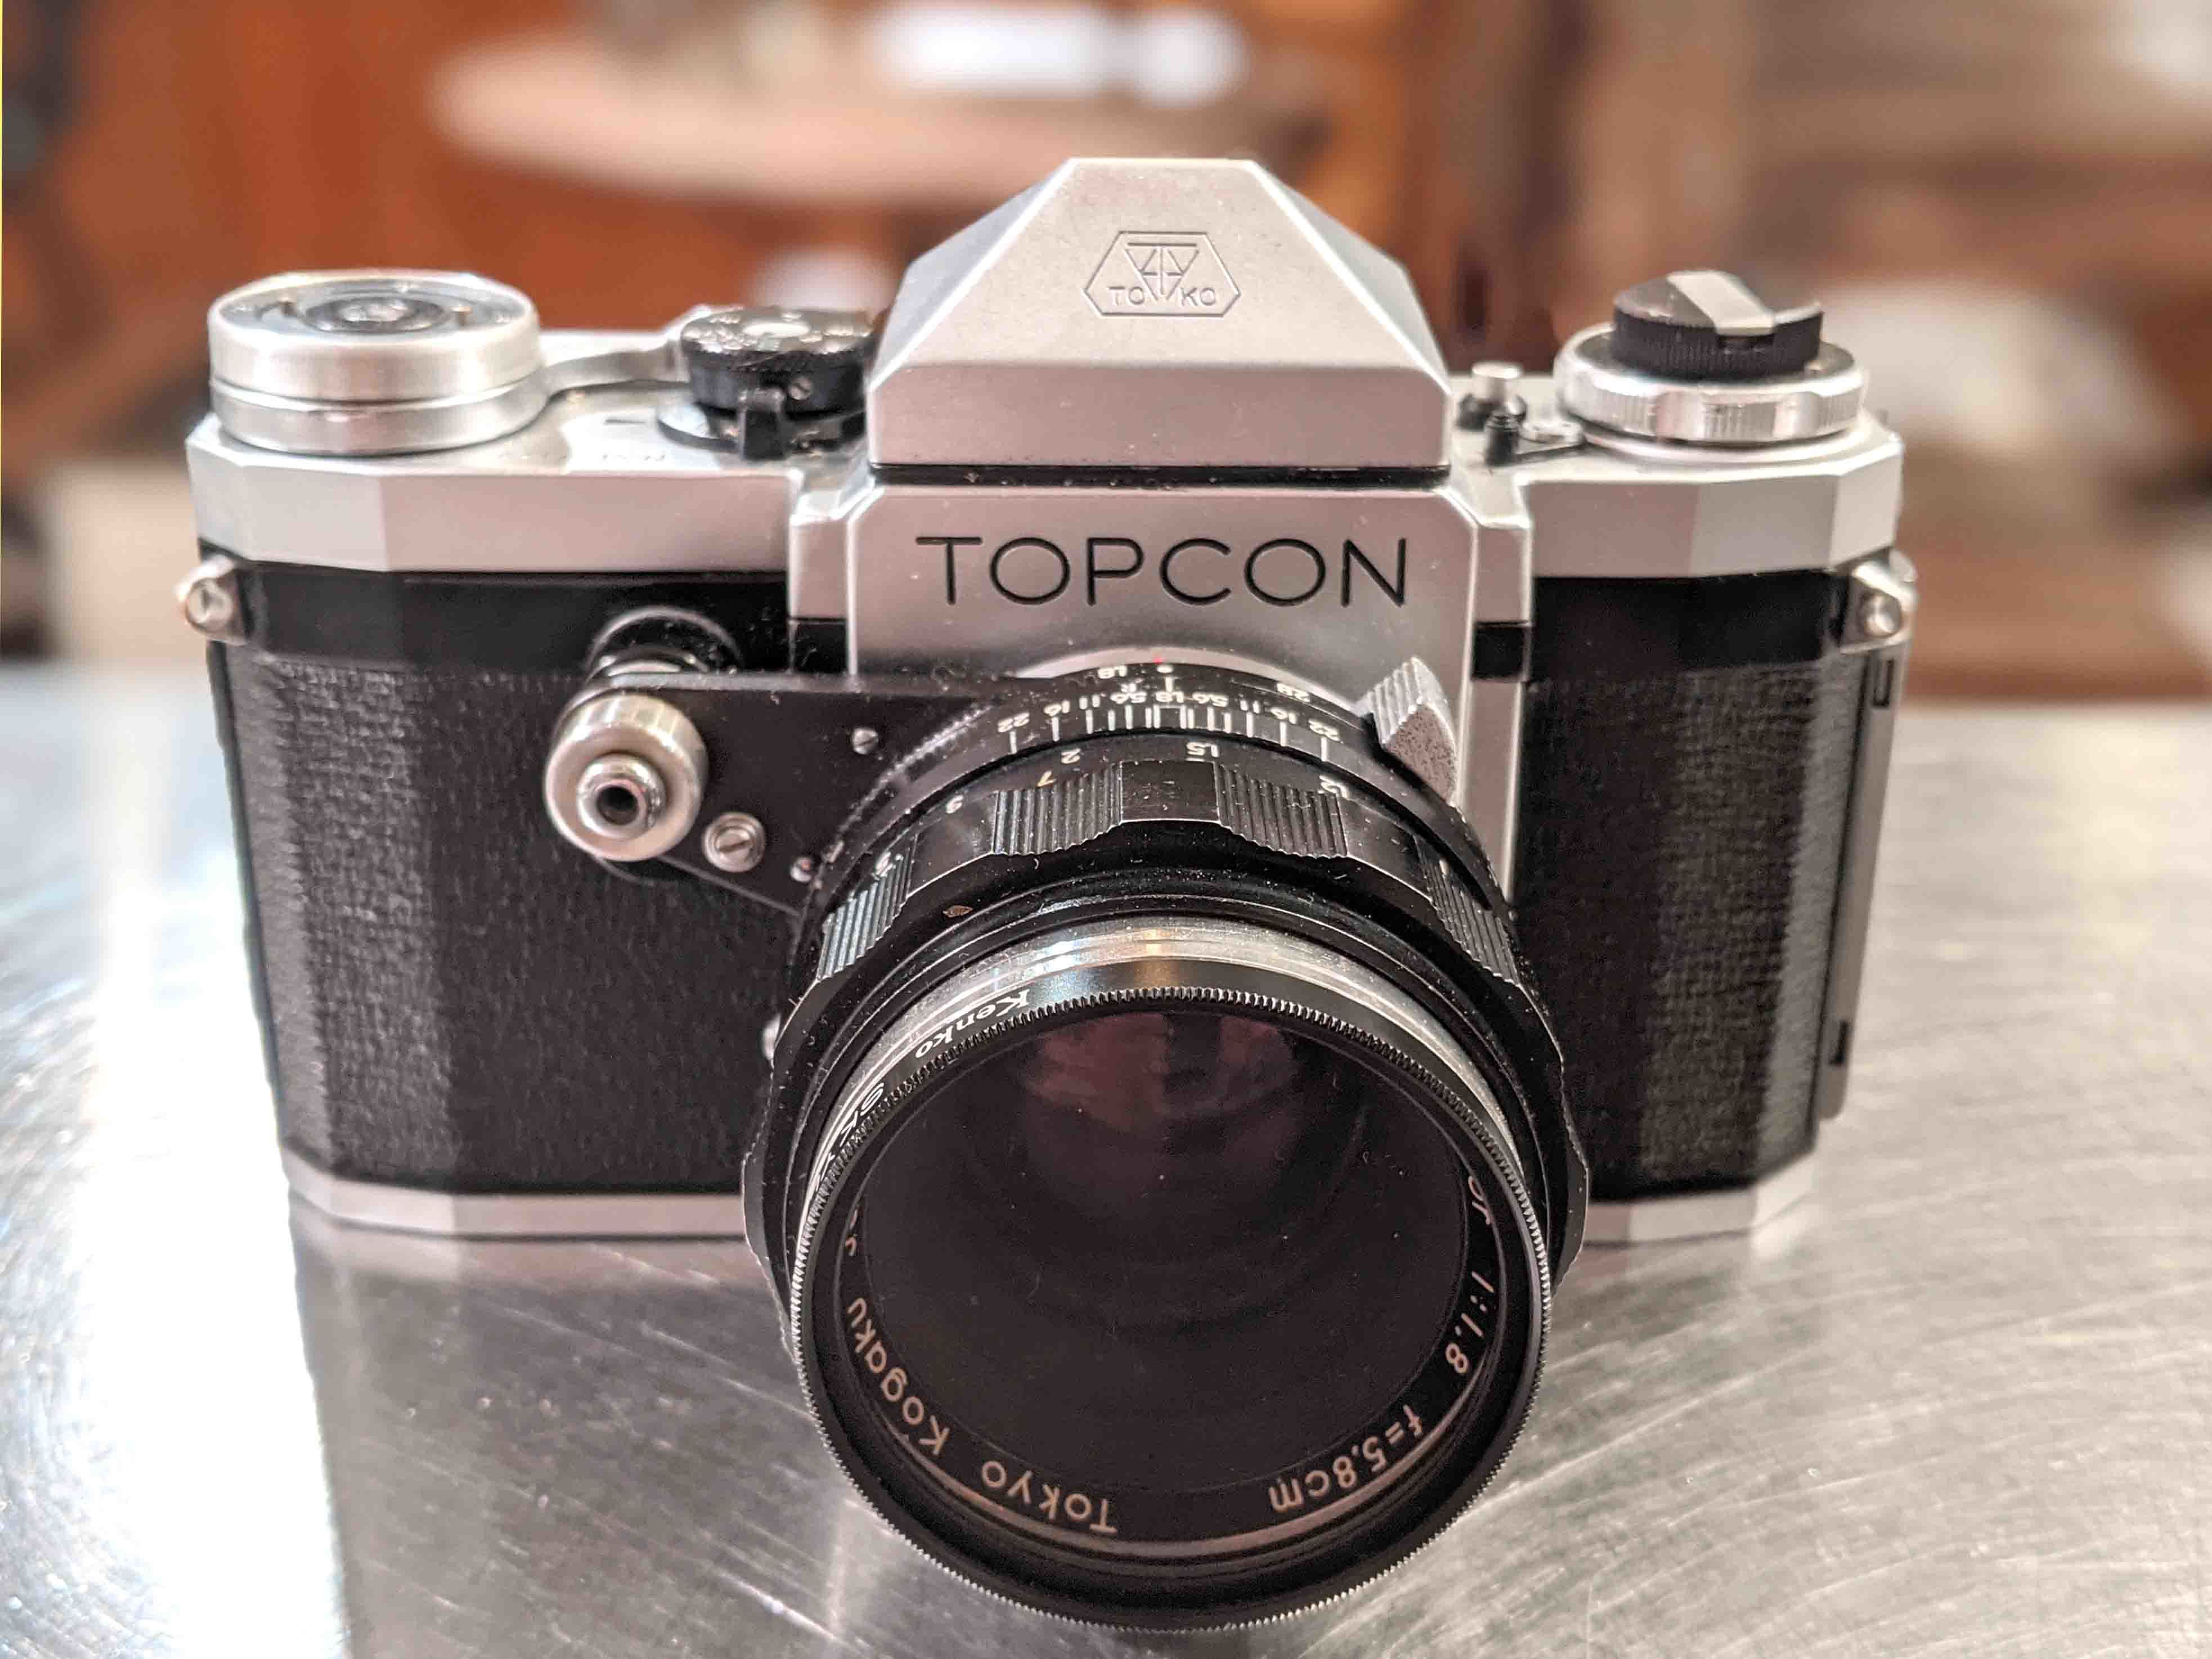 1950's Japan Vintage】一眼レフカメラ TOPCON R/トプコンアール入荷 